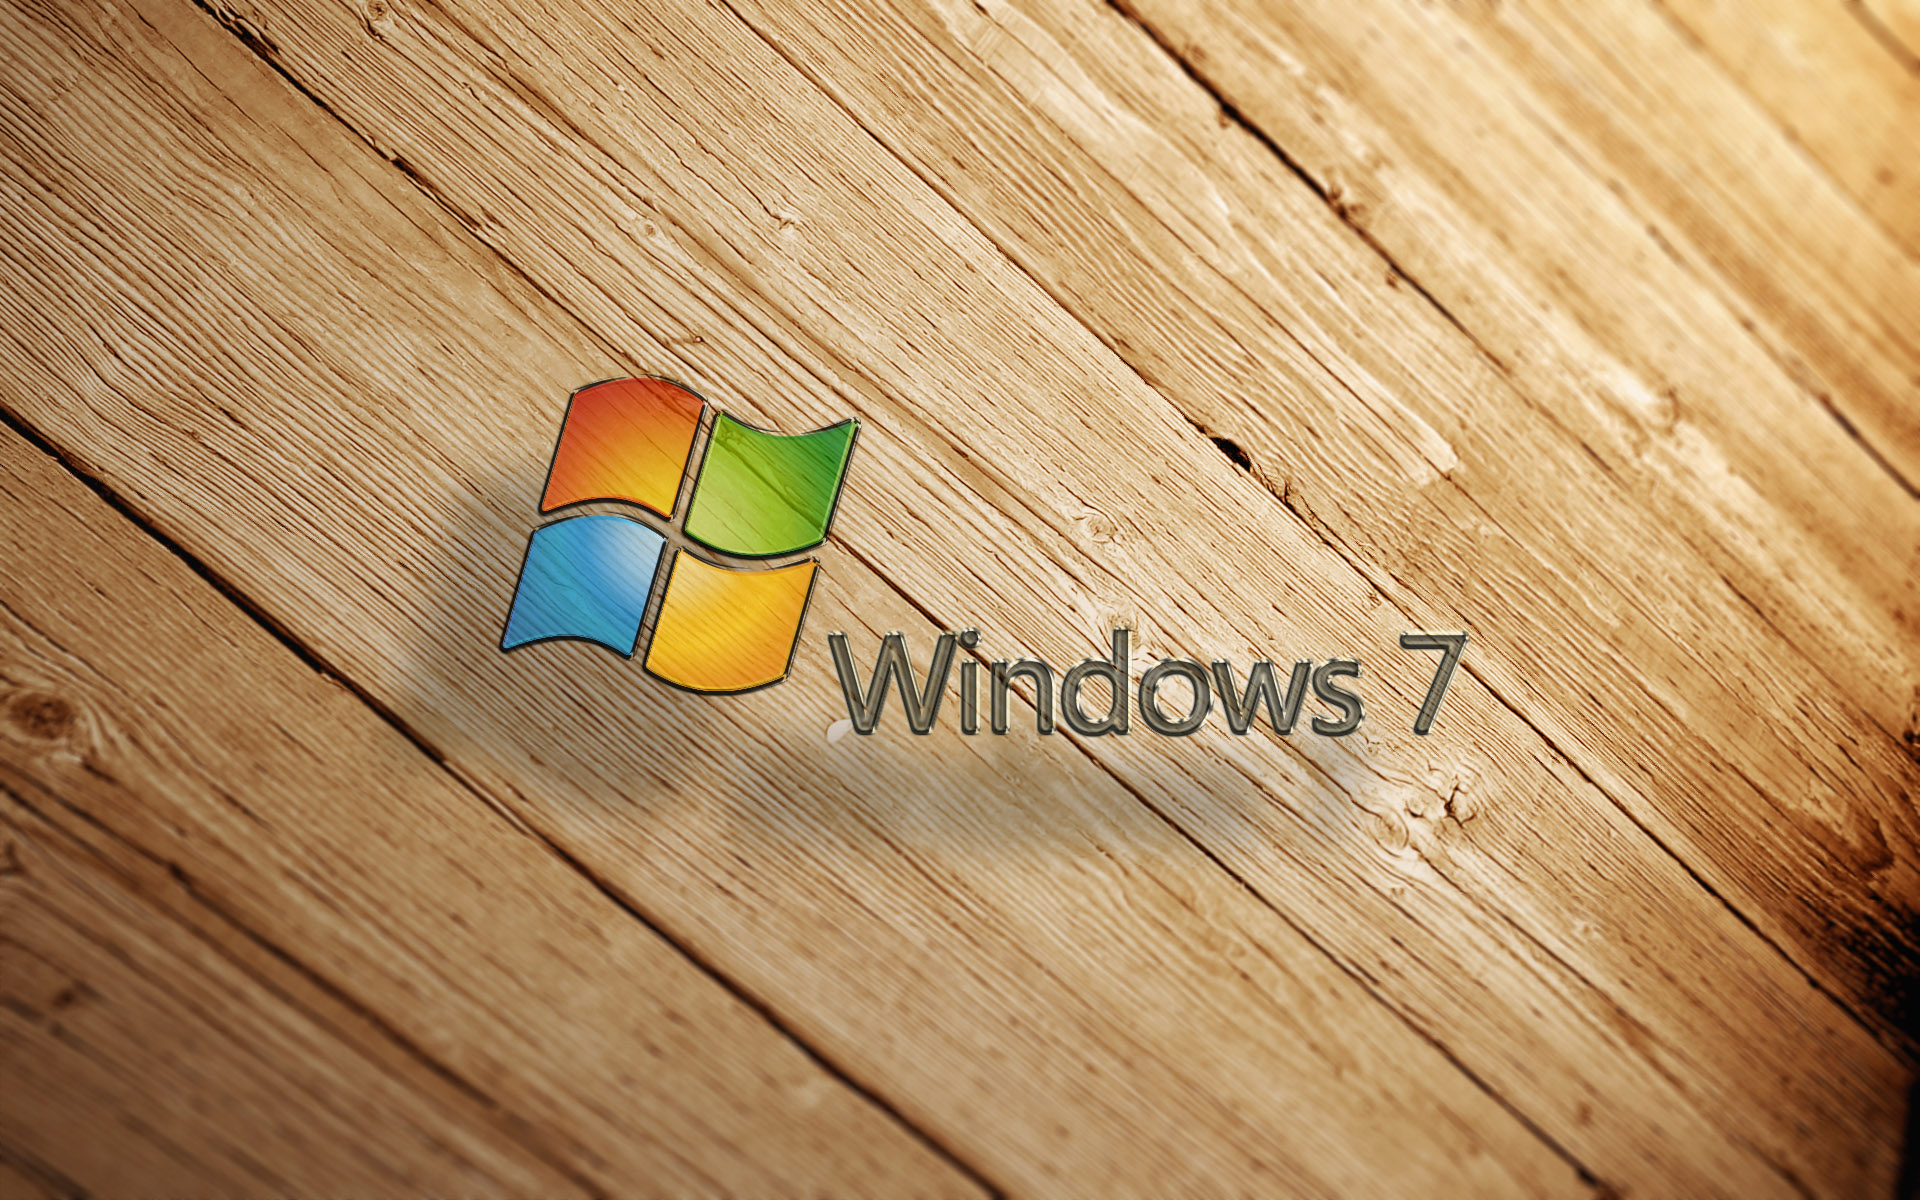 壁纸1920x1200Windows 7 正式版壁纸壁纸 Windows 7 正式版壁纸壁纸 Windows 7 正式版壁纸图片 Windows 7 正式版壁纸素材 其他壁纸 其他图库 其他图片素材桌面壁纸